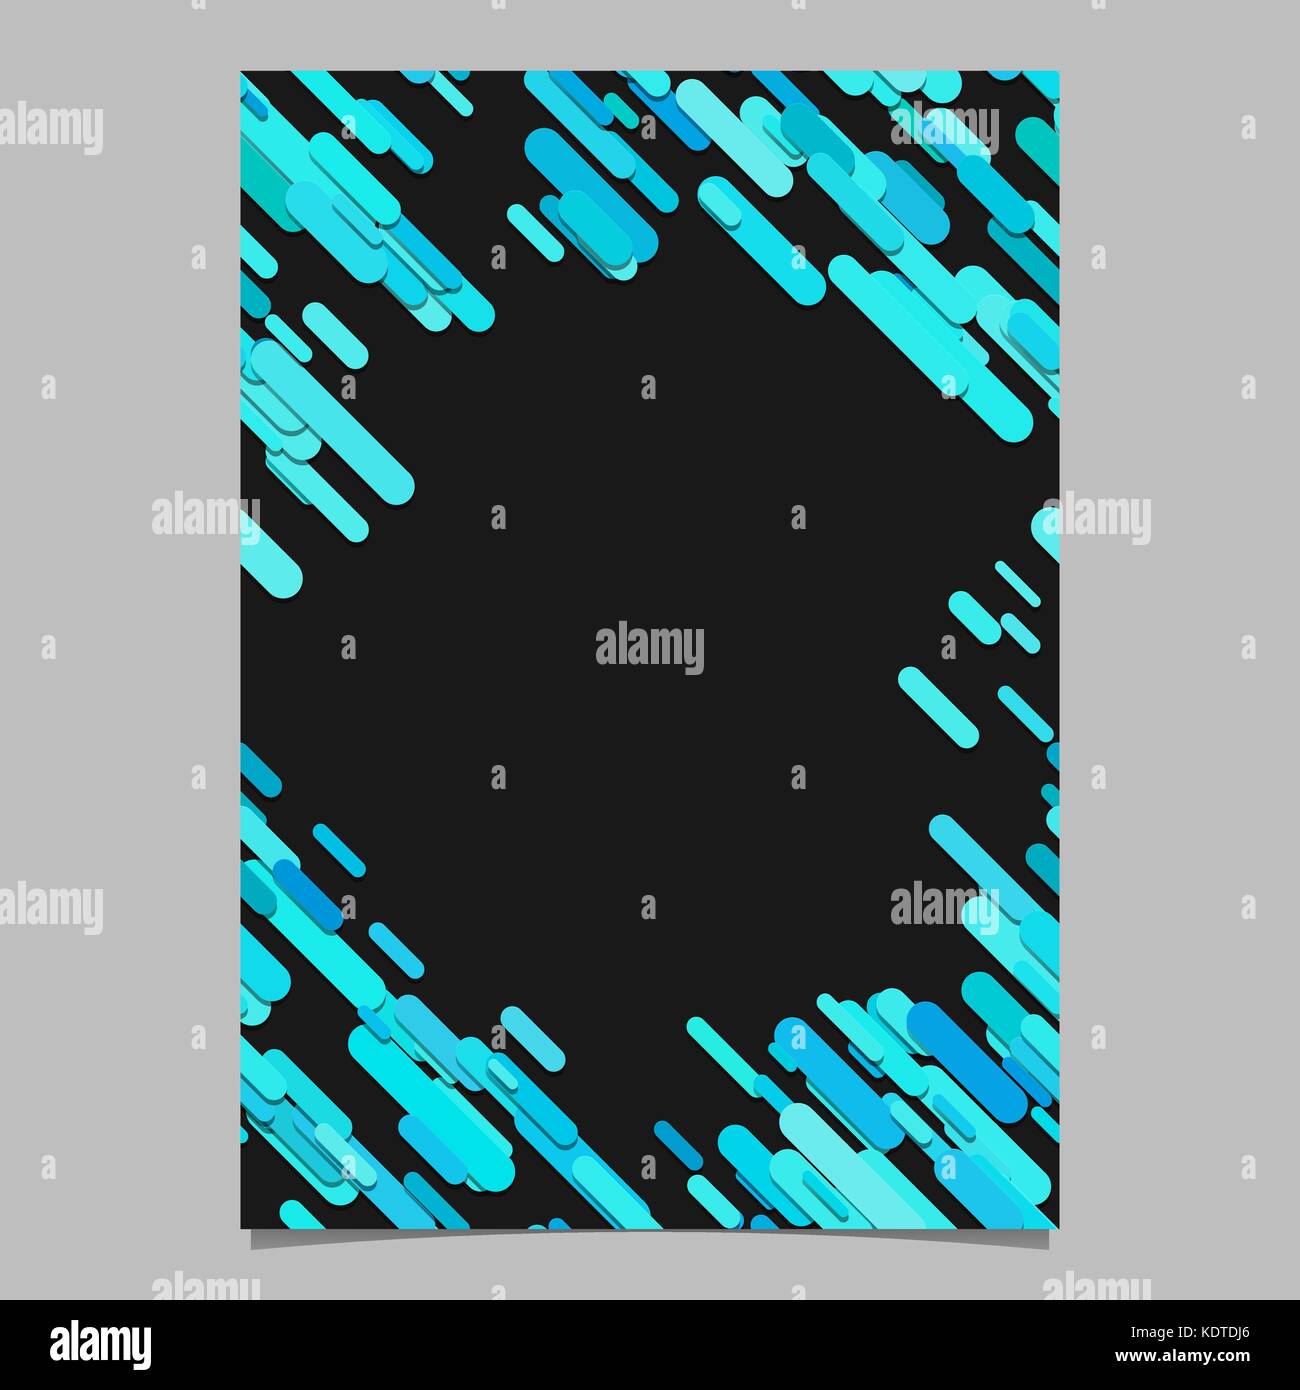 Farbe zufällig diagonal abgerundete Streifenmuster Broschürenvorlage: briefpapier Hintergrund mit Streifen in hellblau Töne Stock Vektor